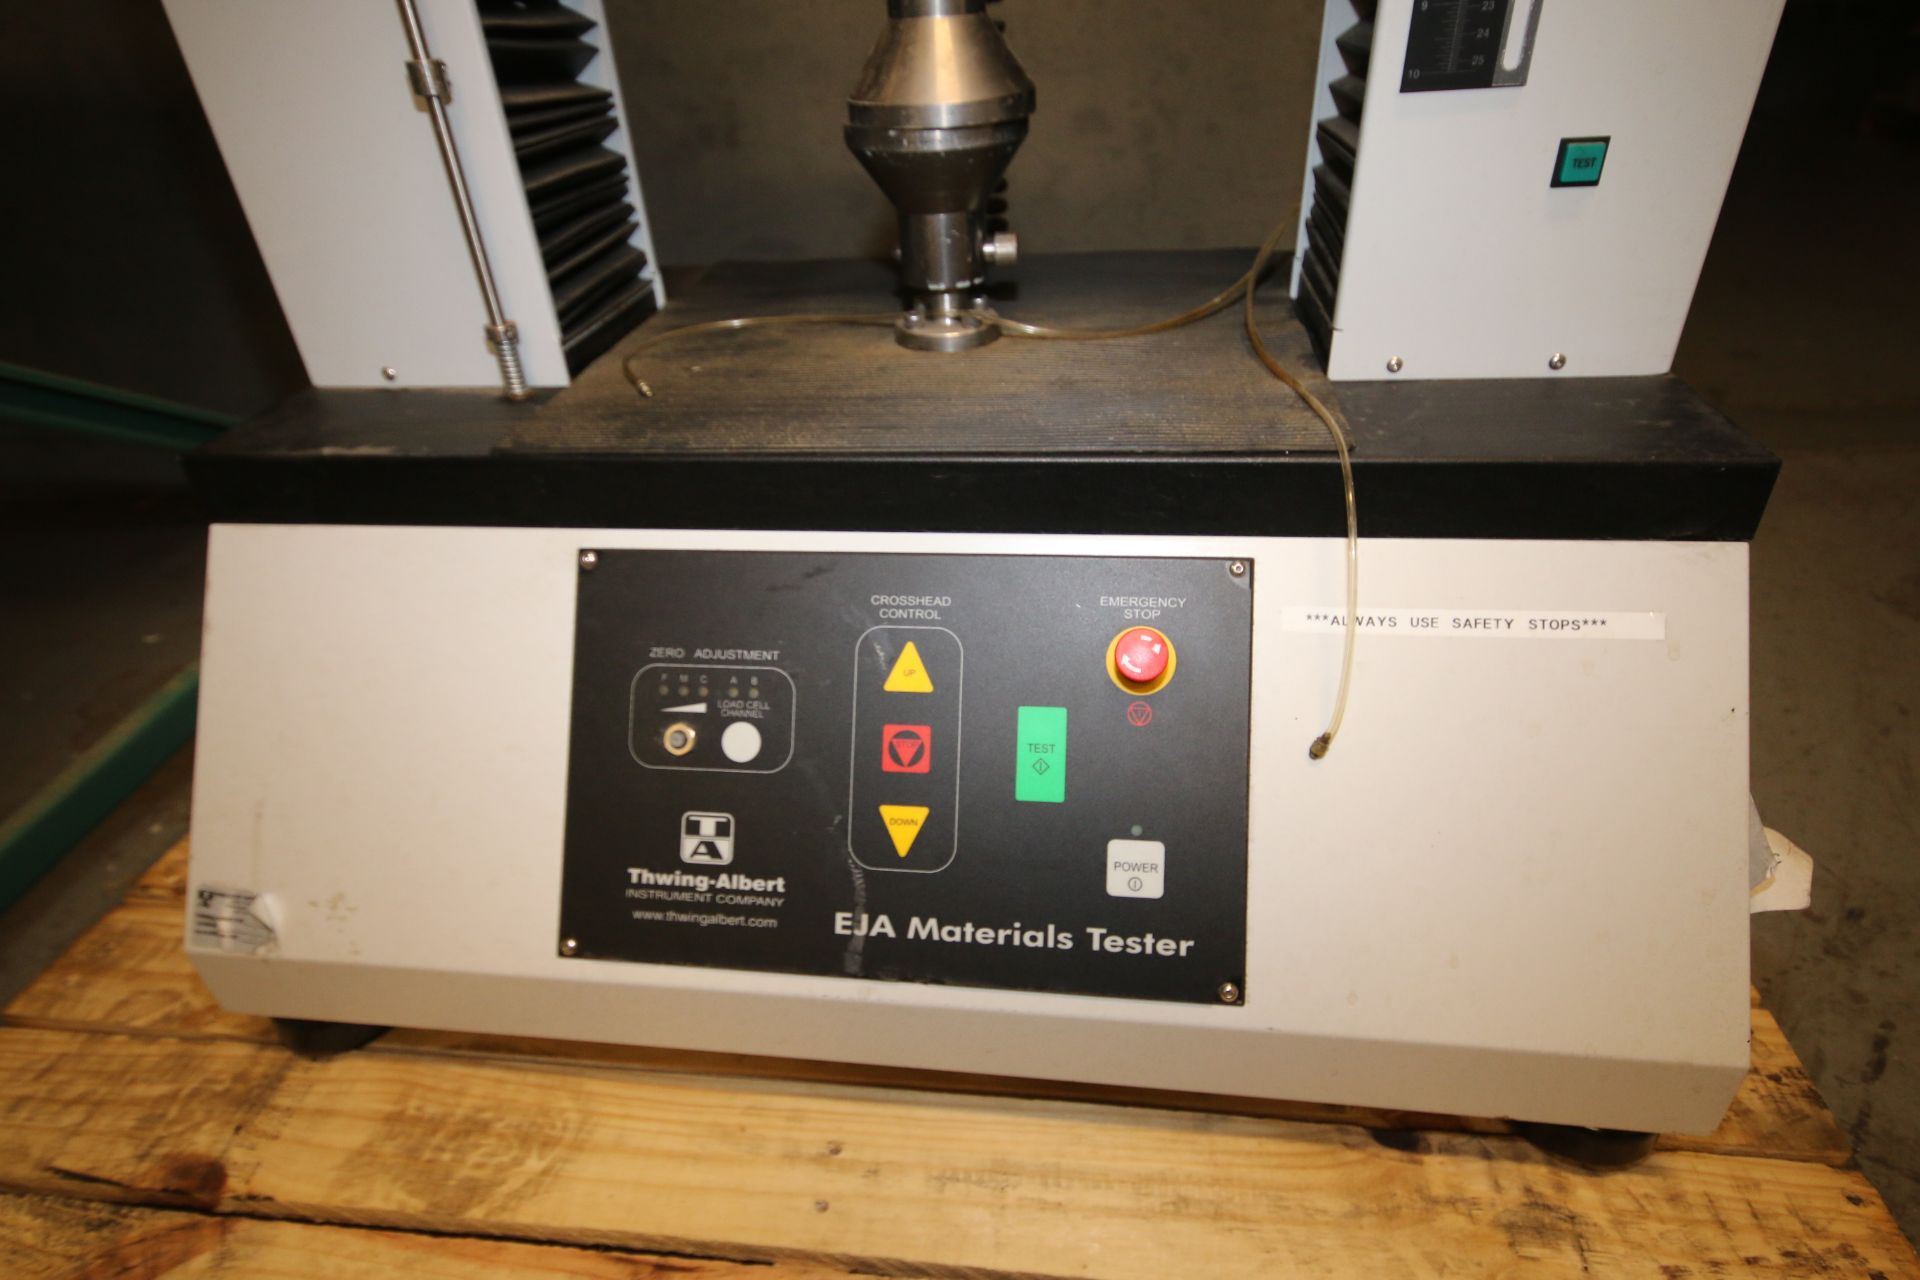 Thwing - Albert EJA Tensile / Materials Tester, PN 1350-2006, SN 50521, 110V - Image 4 of 5